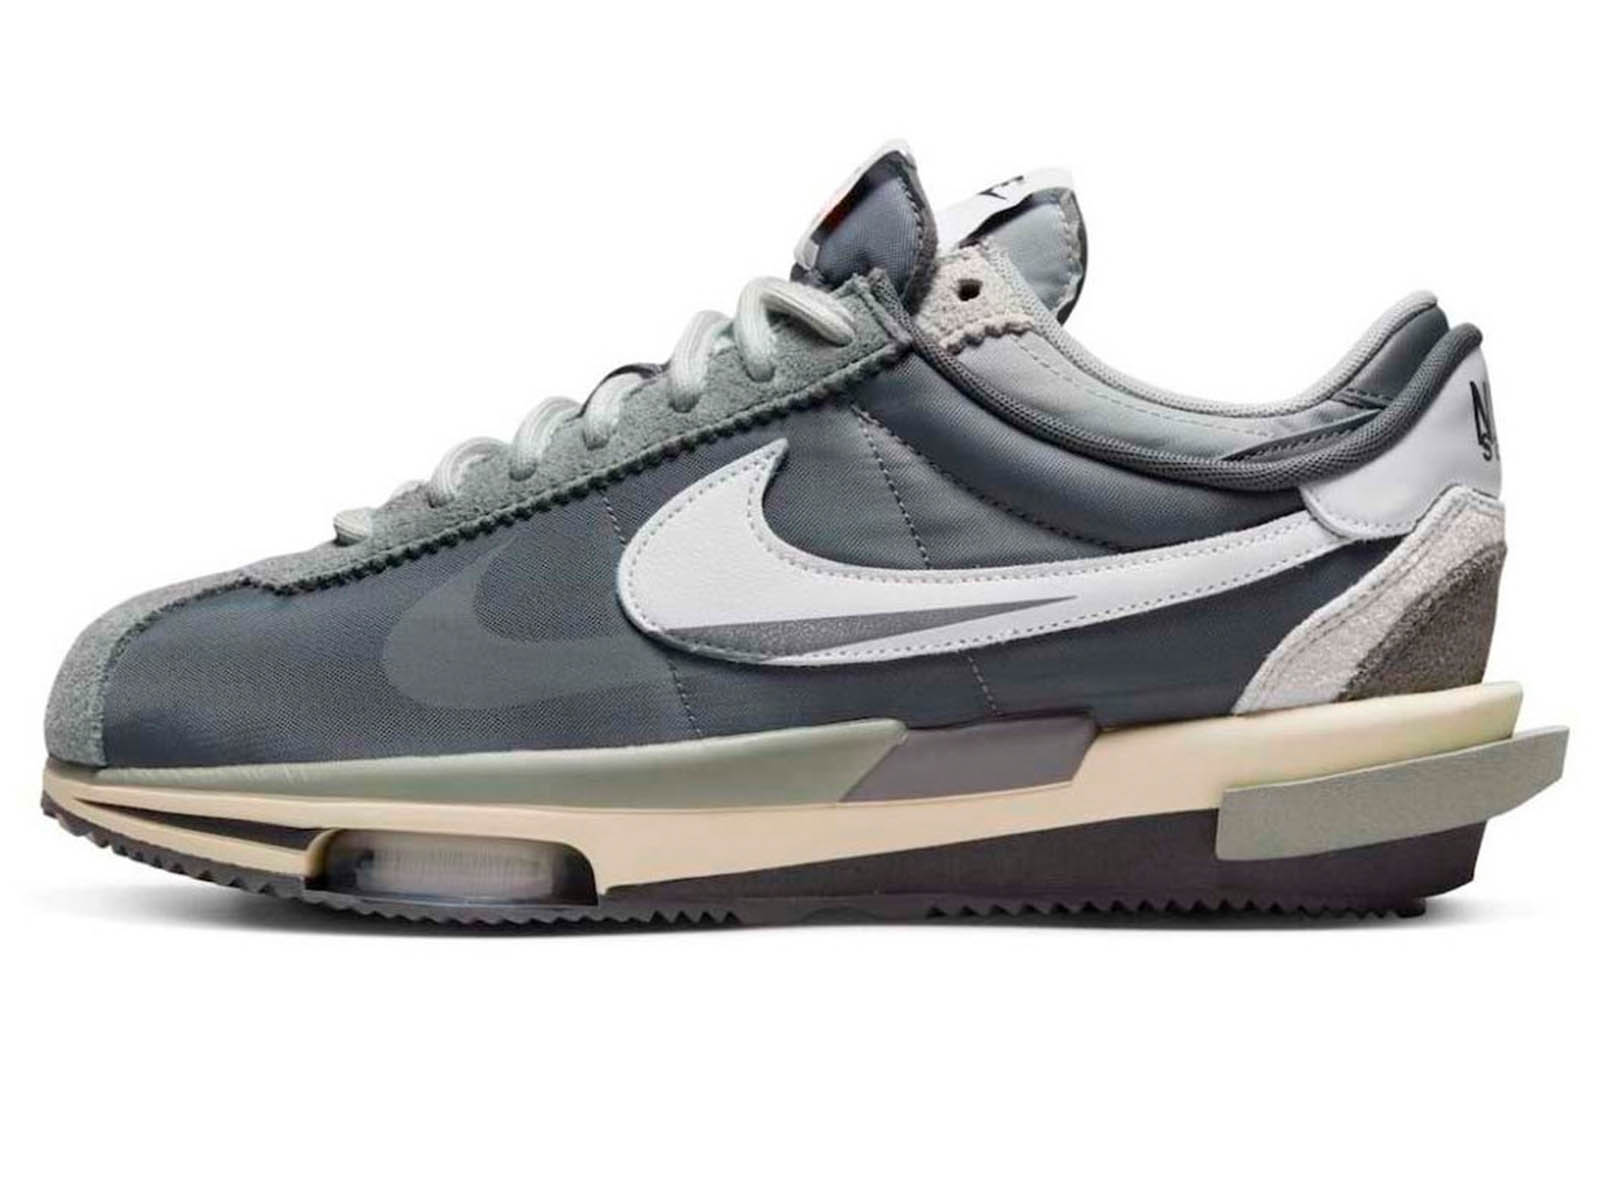 sacai x Nike Cortez Zoom “Iron Grey”: release date